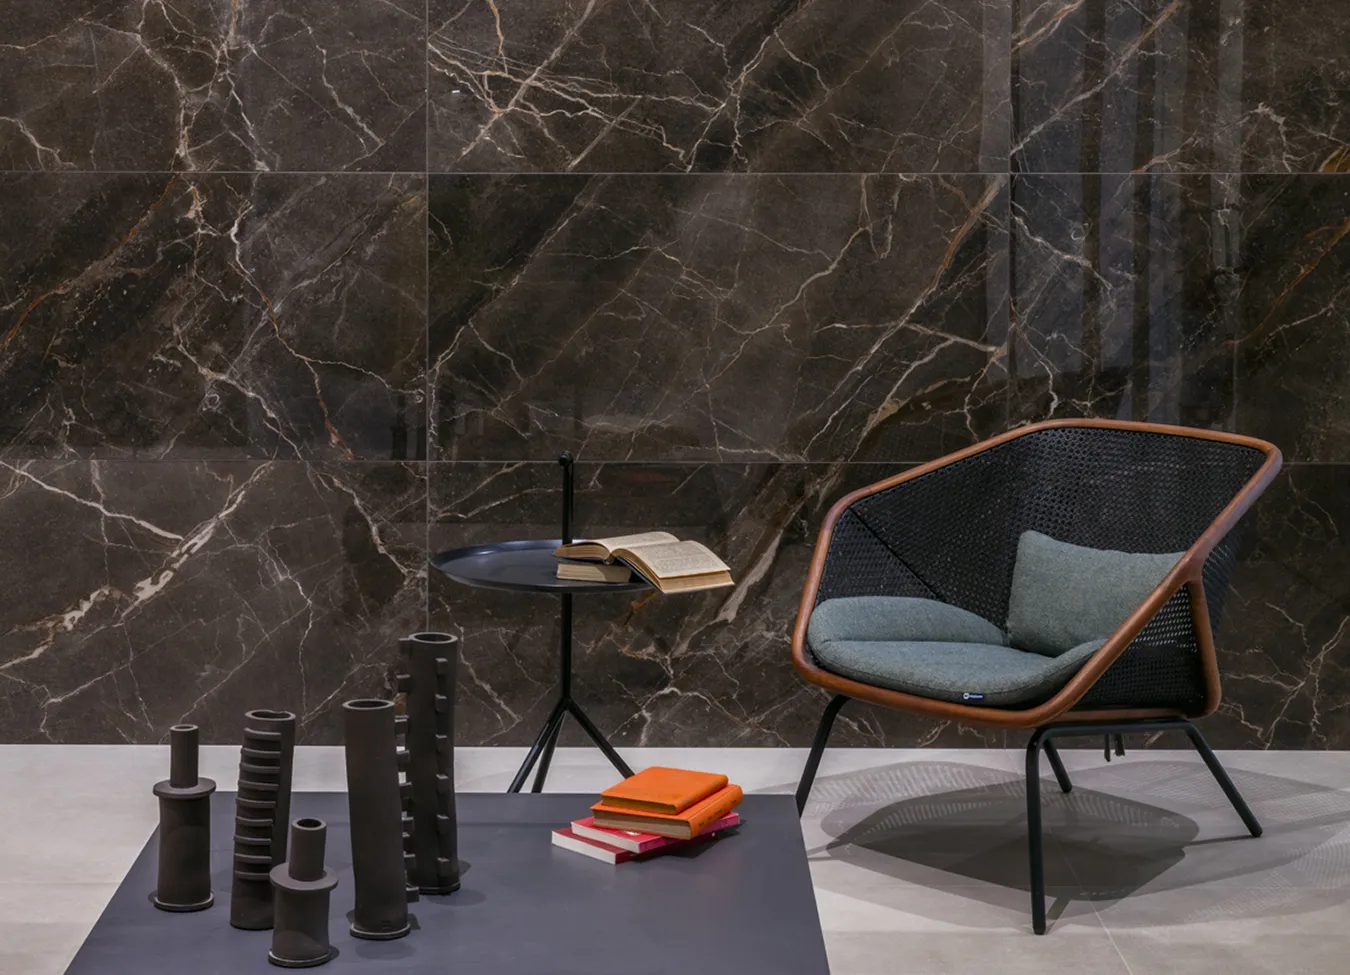 Stilvolle Wand mit Ombra Moca Marmor-Effekt Feinsteinzeug aus der 9cento Kollektion, mit Designerstuhl und modernen Accessoires.